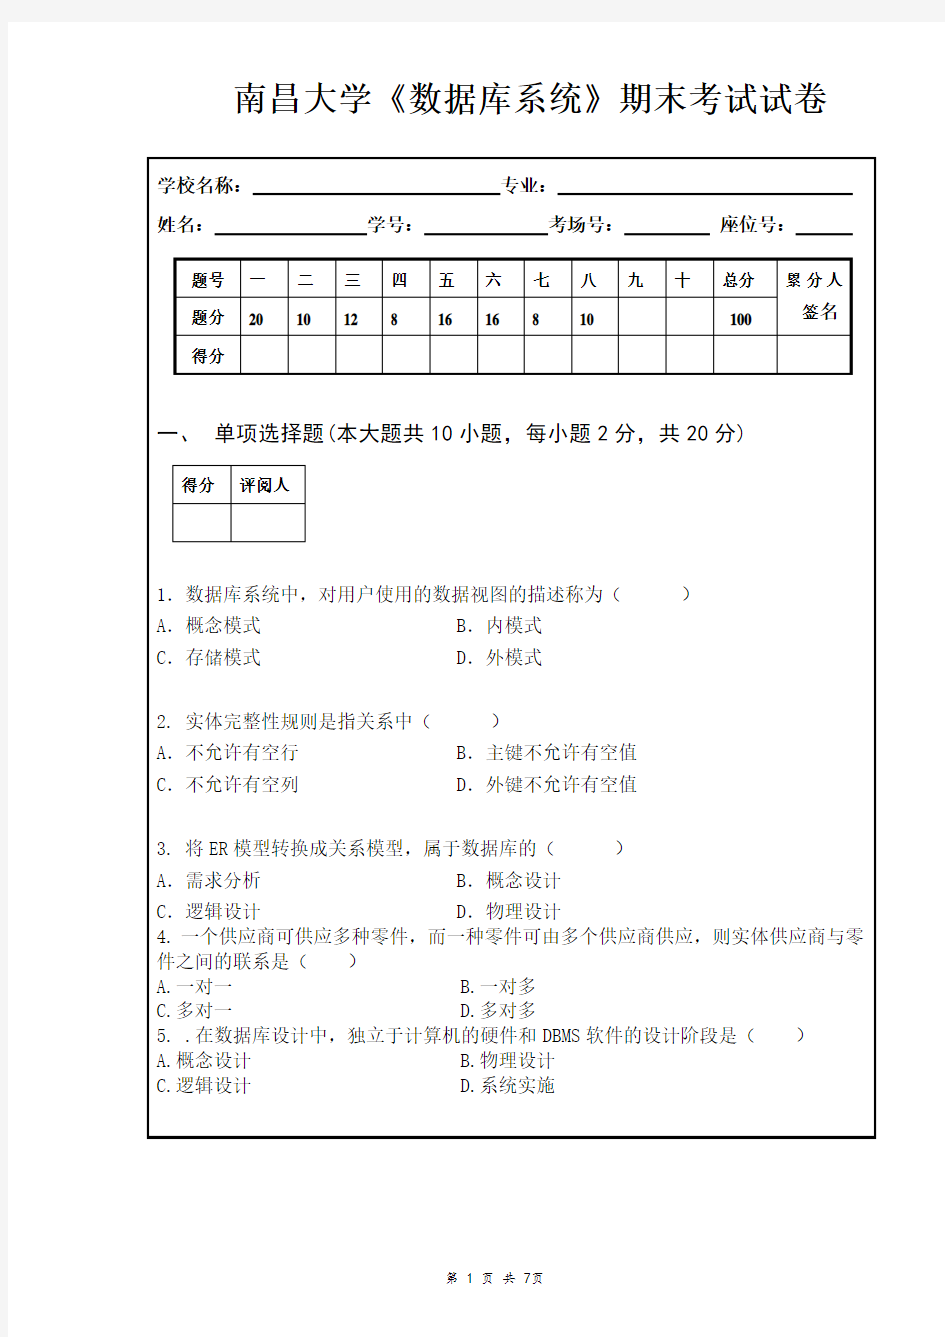 (完整版)南昌大学数据库系统期末考试试卷